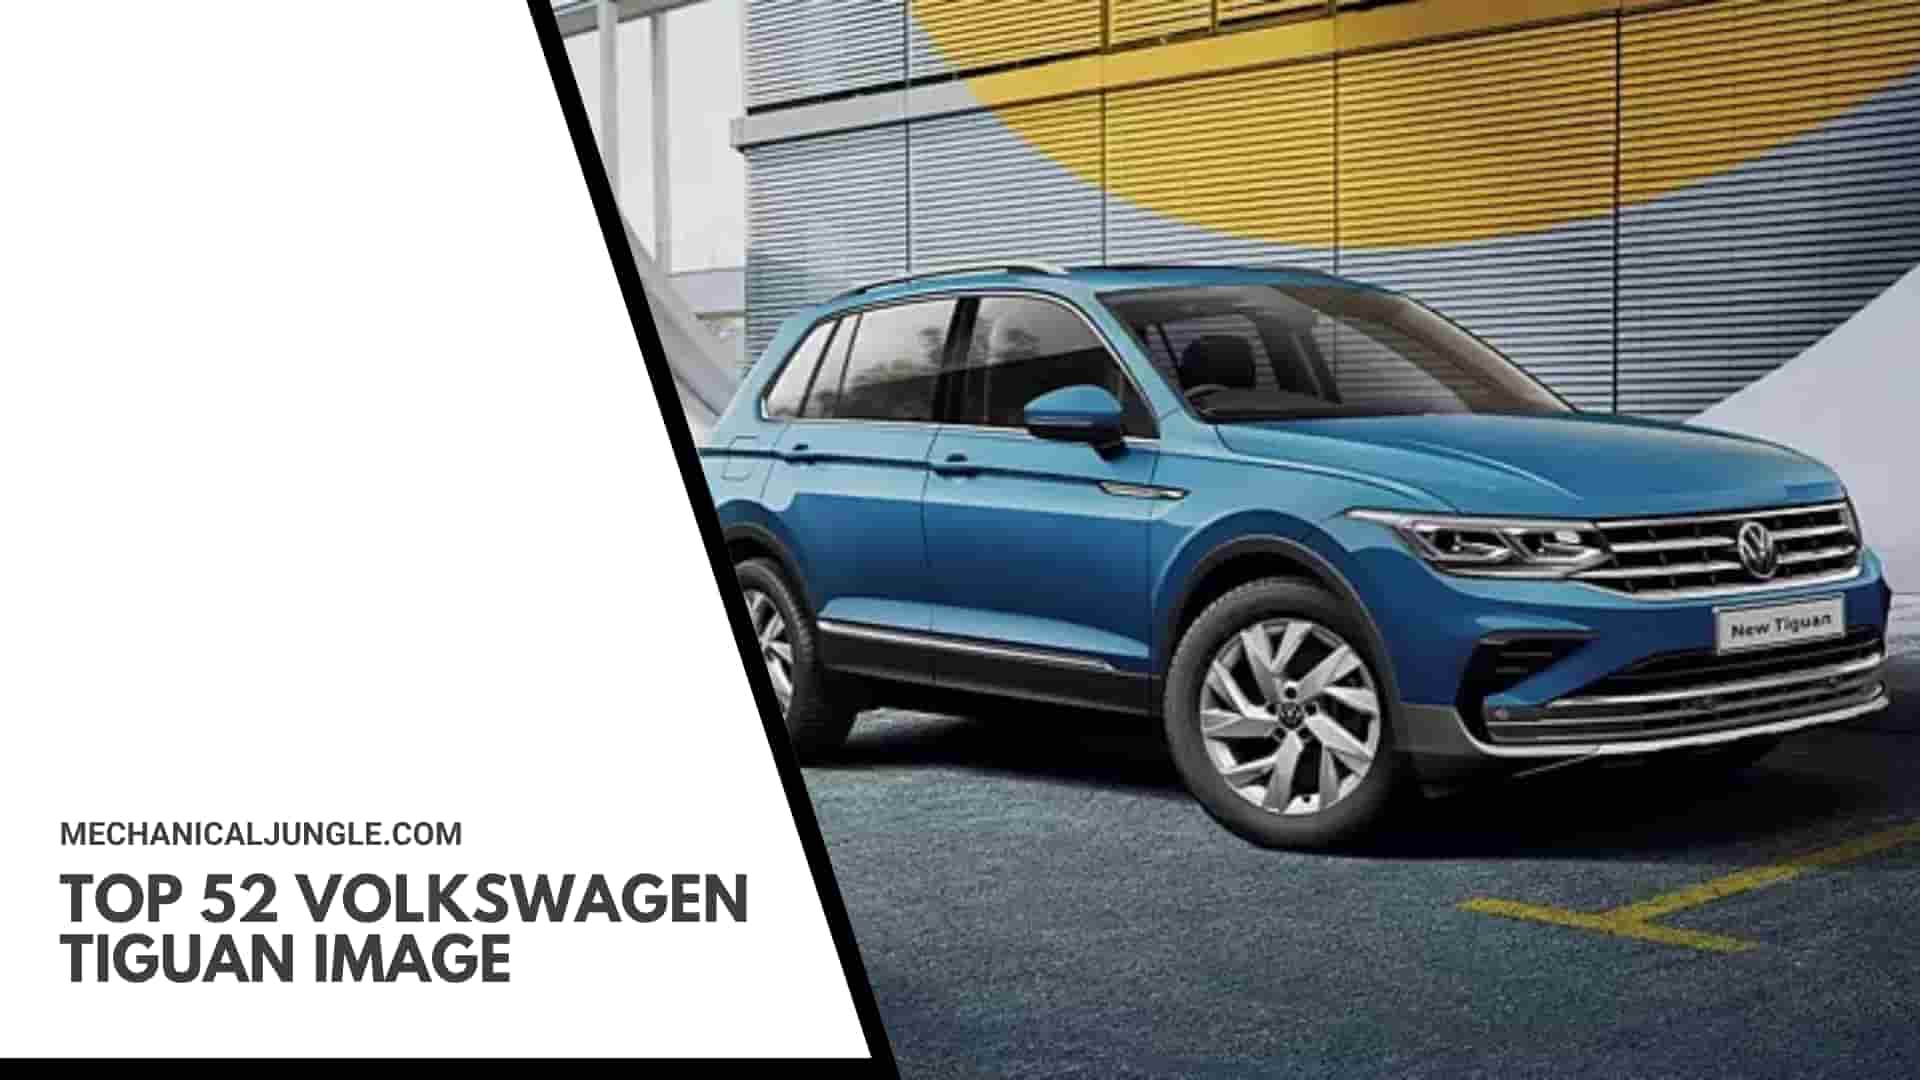 Top 52 Volkswagen Tiguan Image